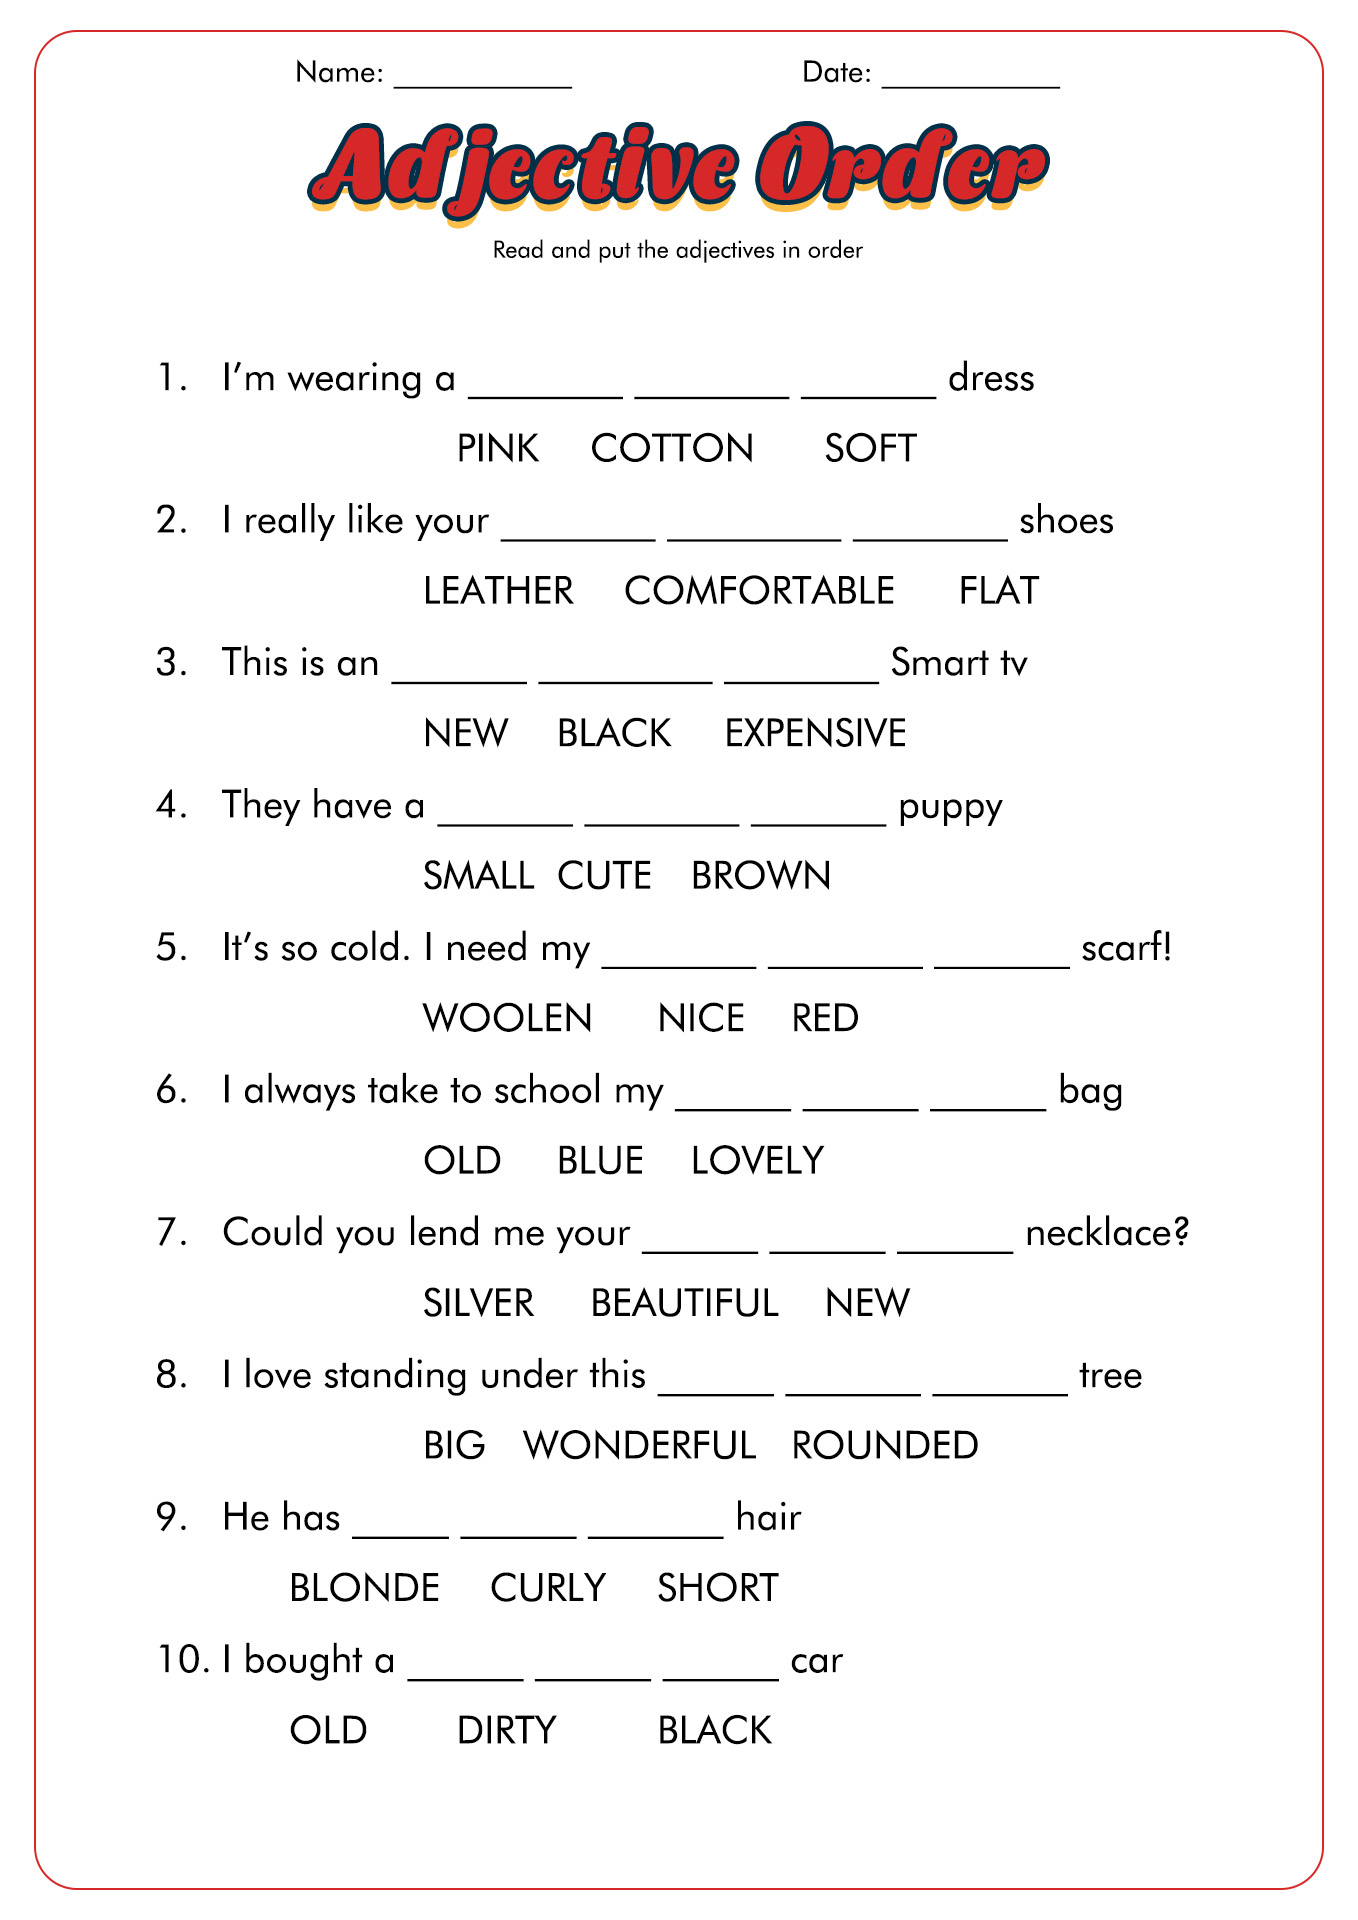 Adjective Order Worksheets Image